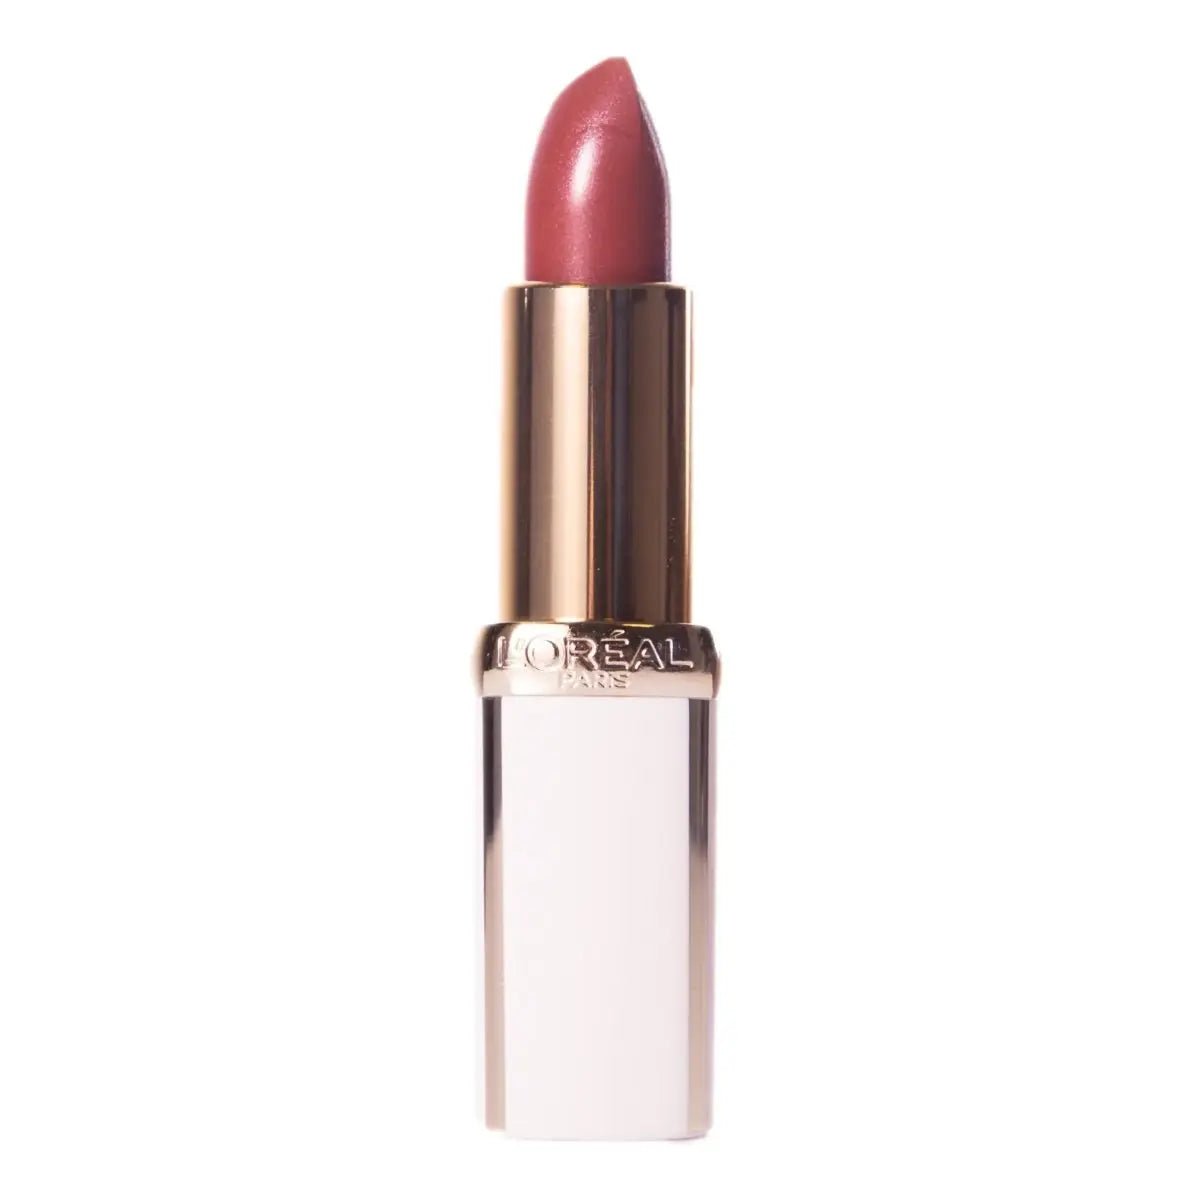 Image of L'Oréal Paris Age Perfect Lipstick